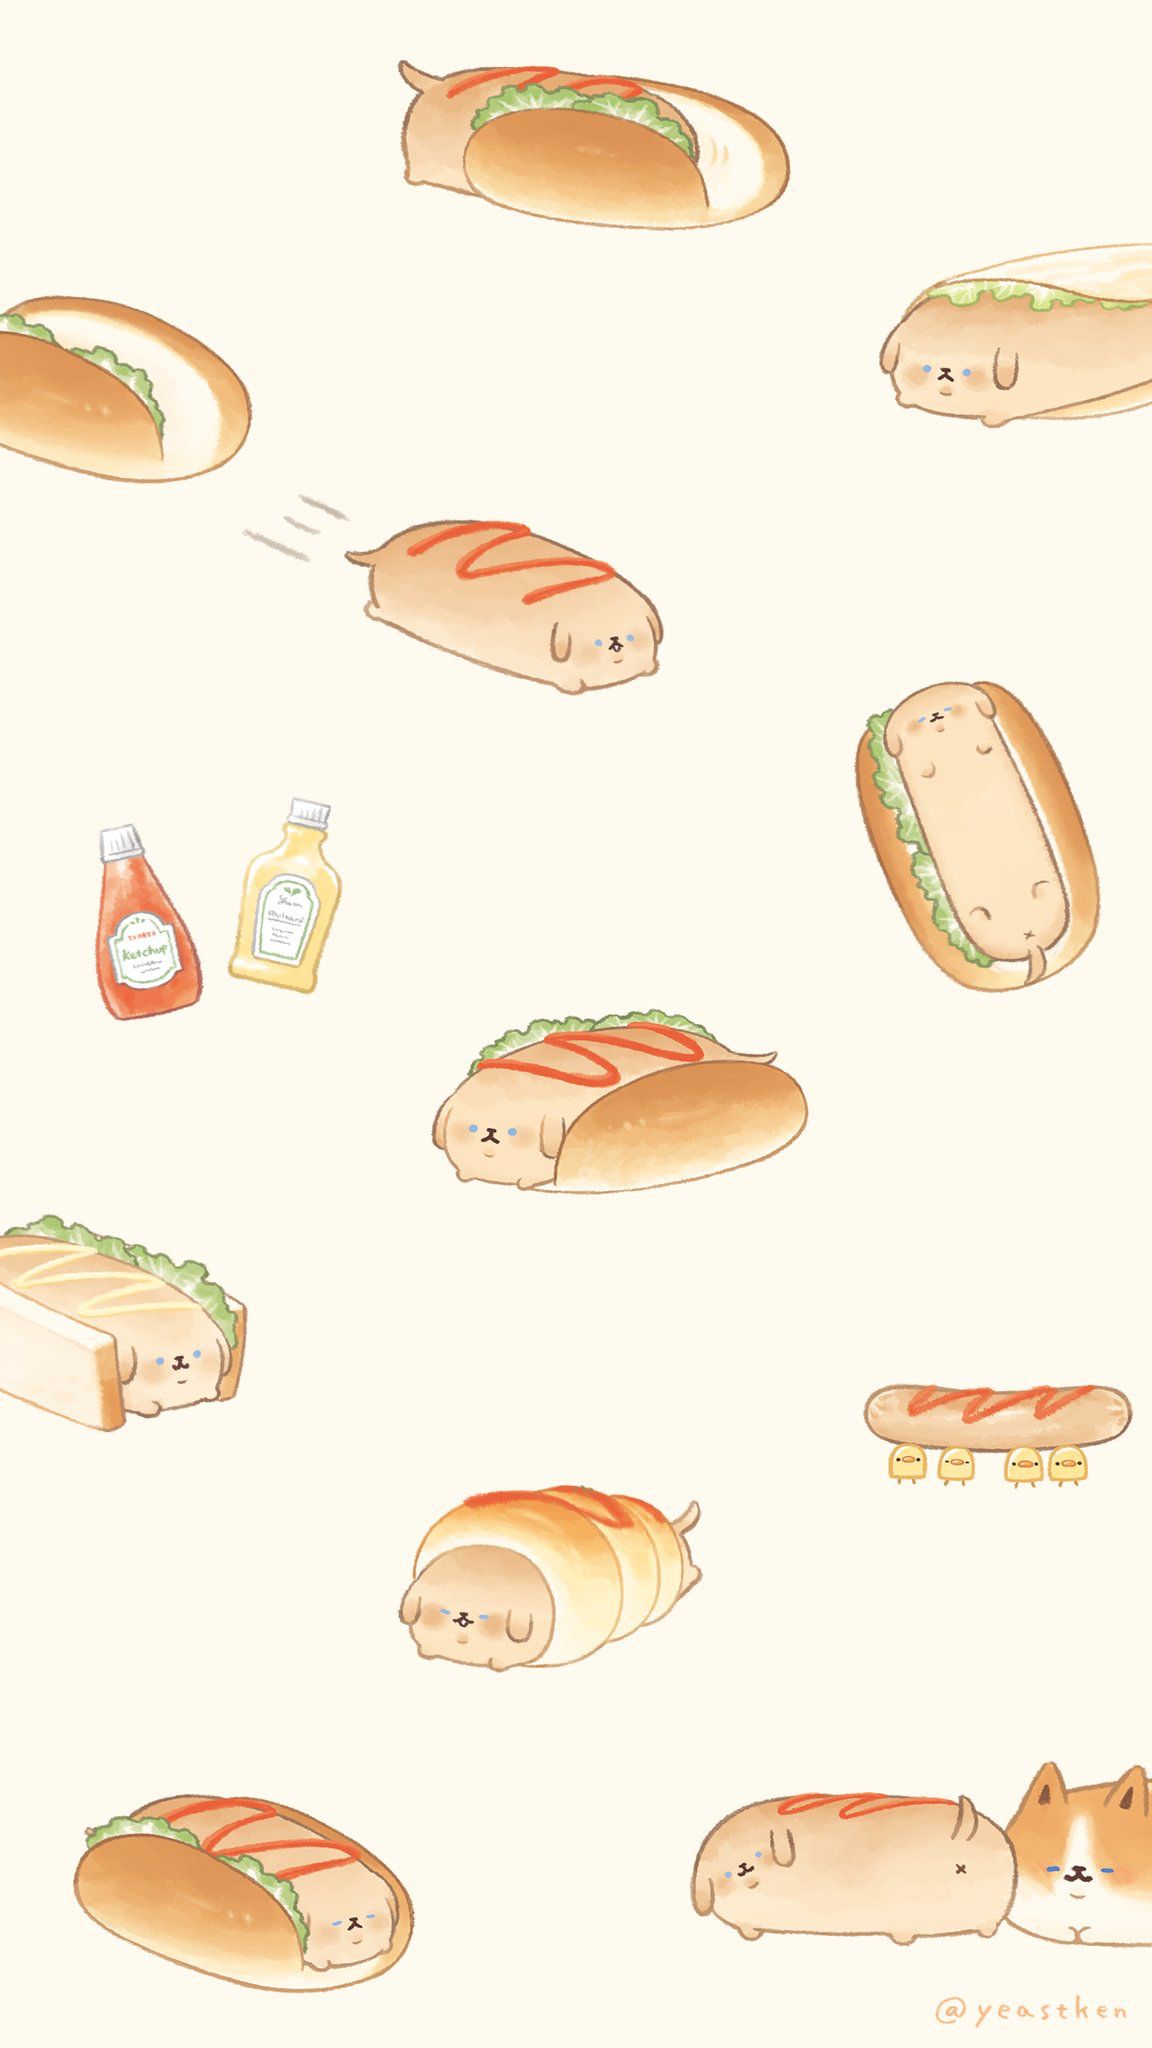 Yeastken. Cute food wallpaper, Cute wallpaper, Cute food drawings